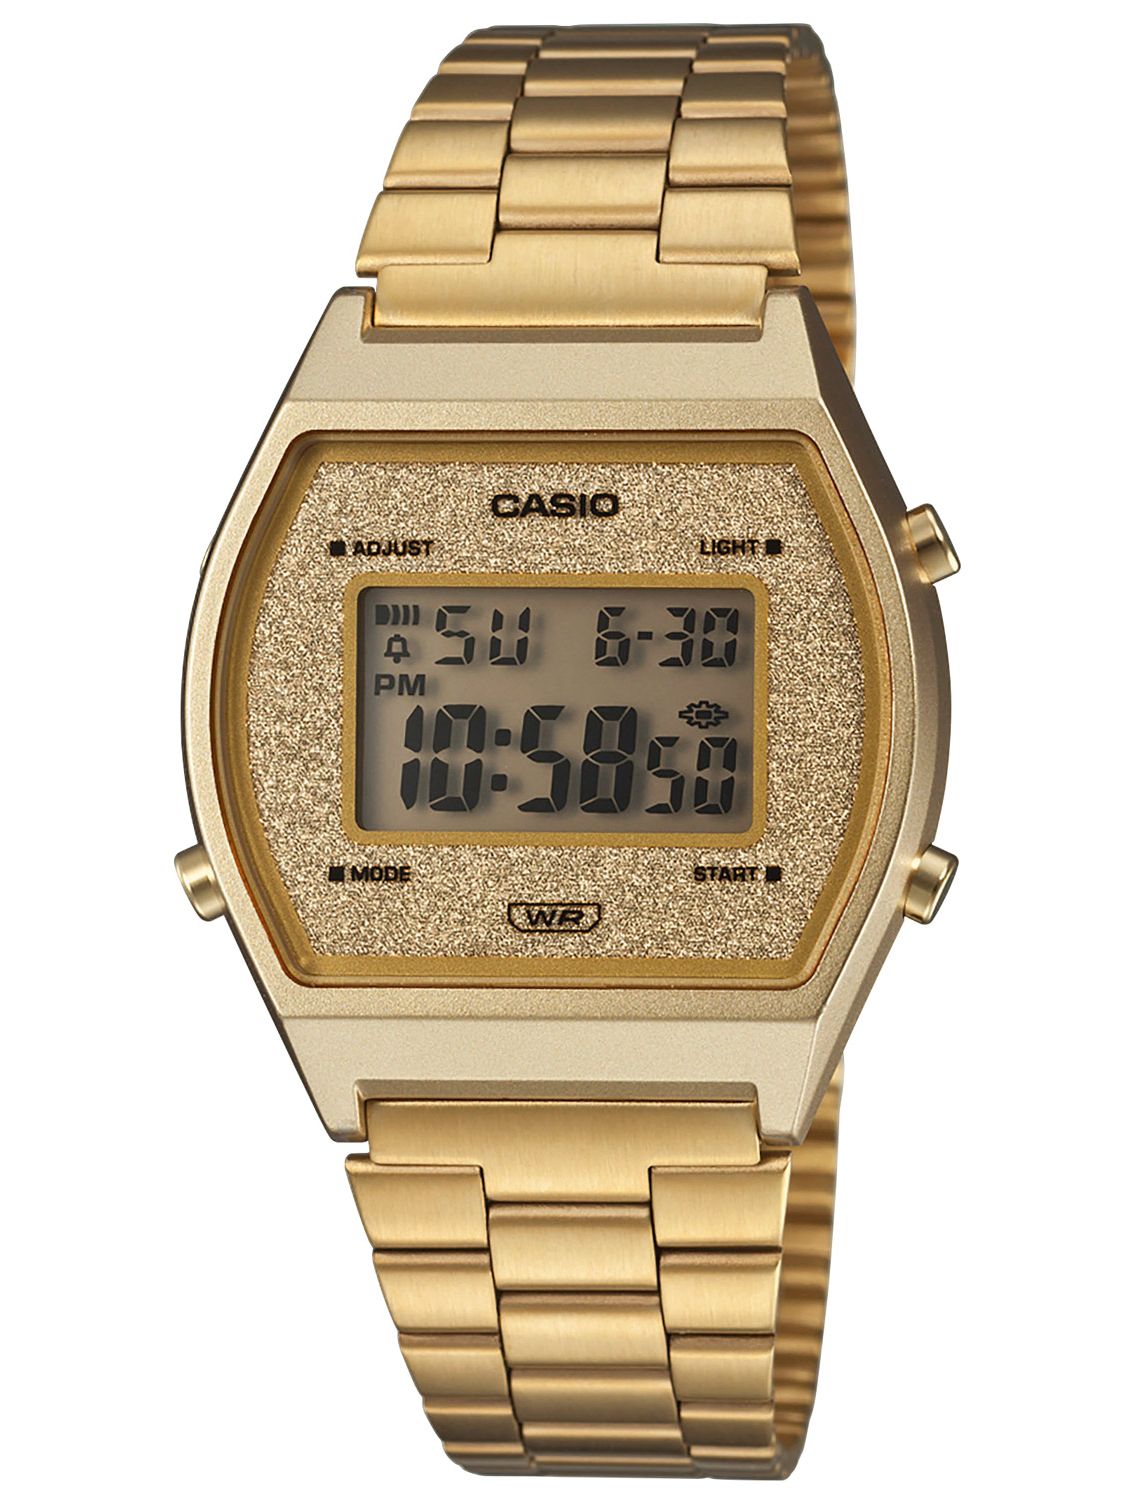 Casio B640wgg 9ef Digital Watch Vintage Edgy Gold Tone